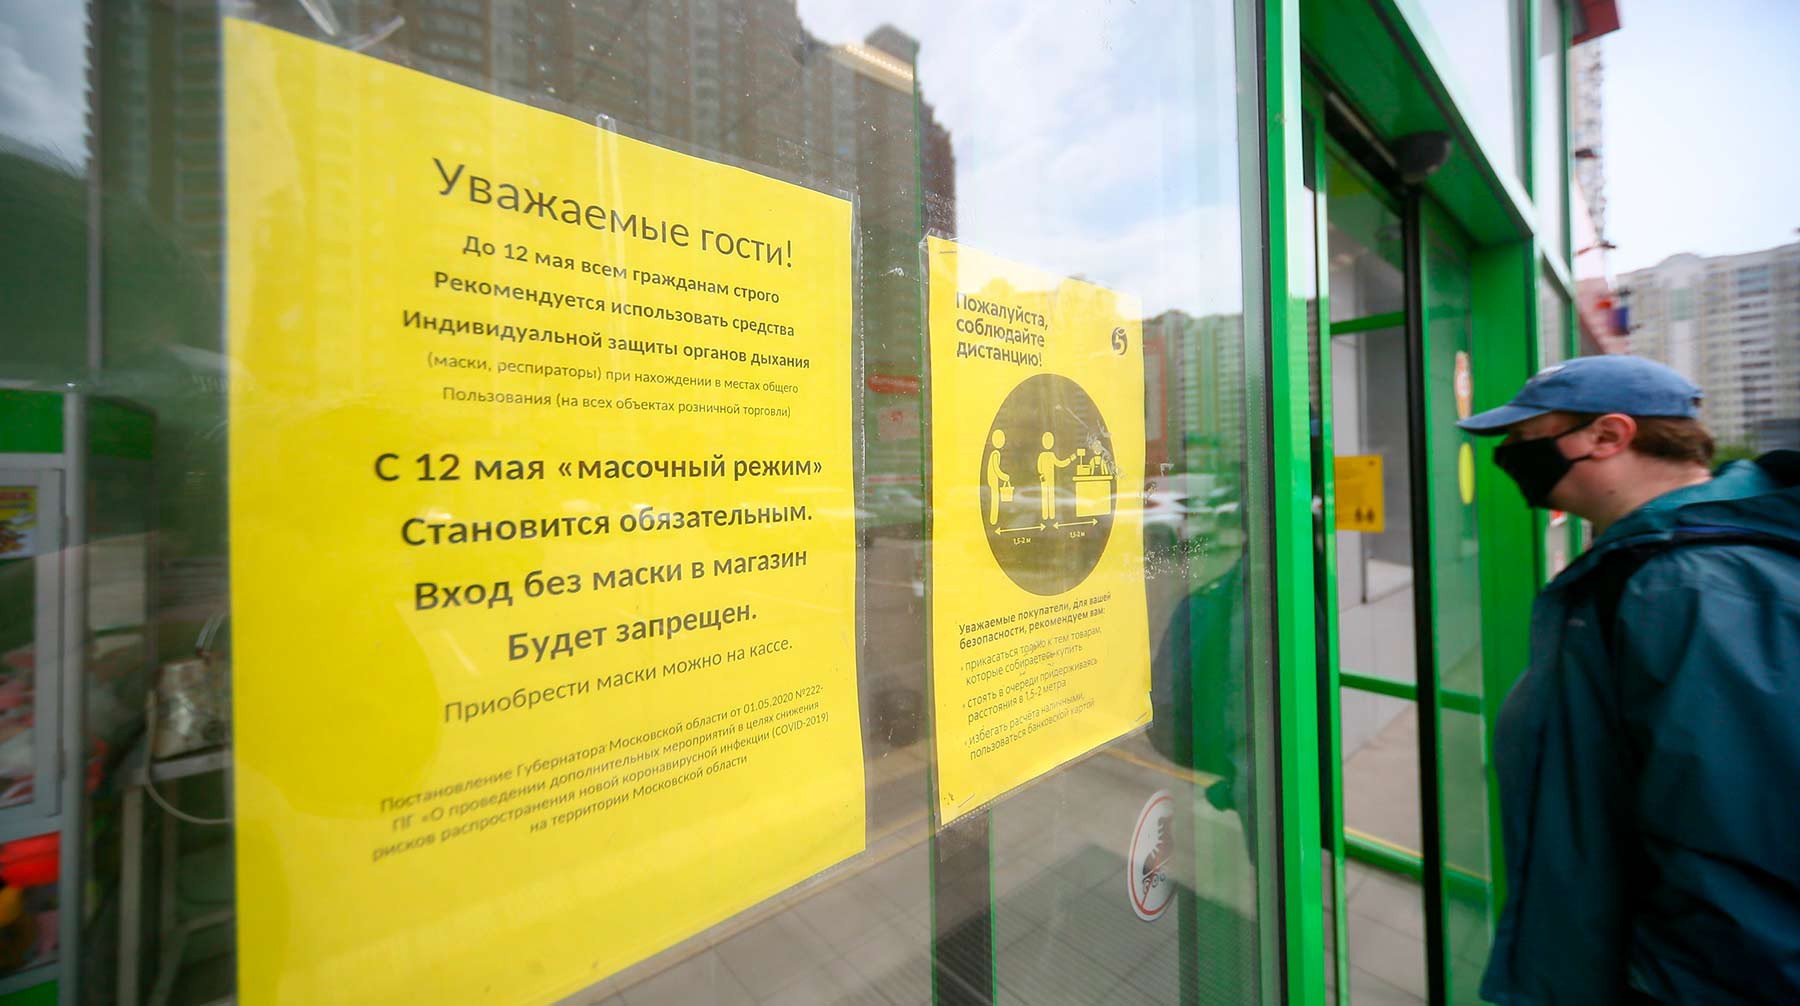 Dailystorm - В московских магазинах выявили более 70 нарушителей масочного режима